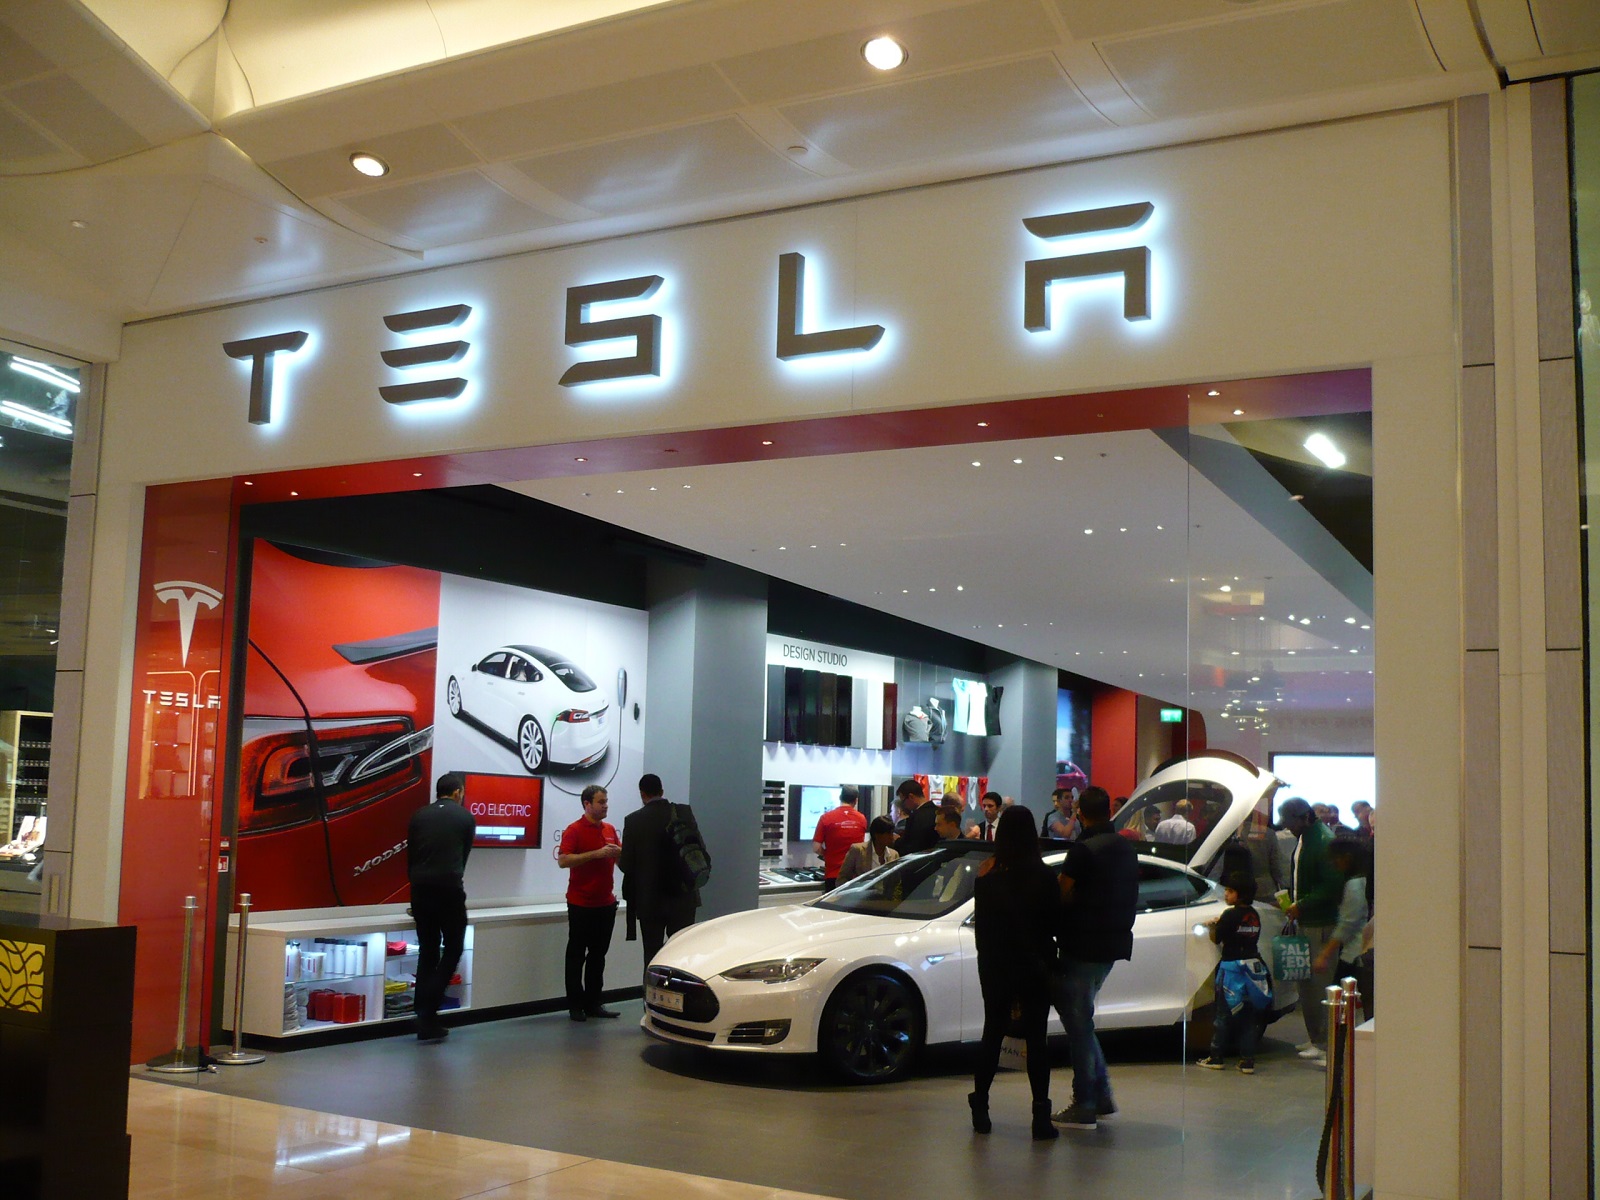 Tesla store opening in Westfield Mall, London.